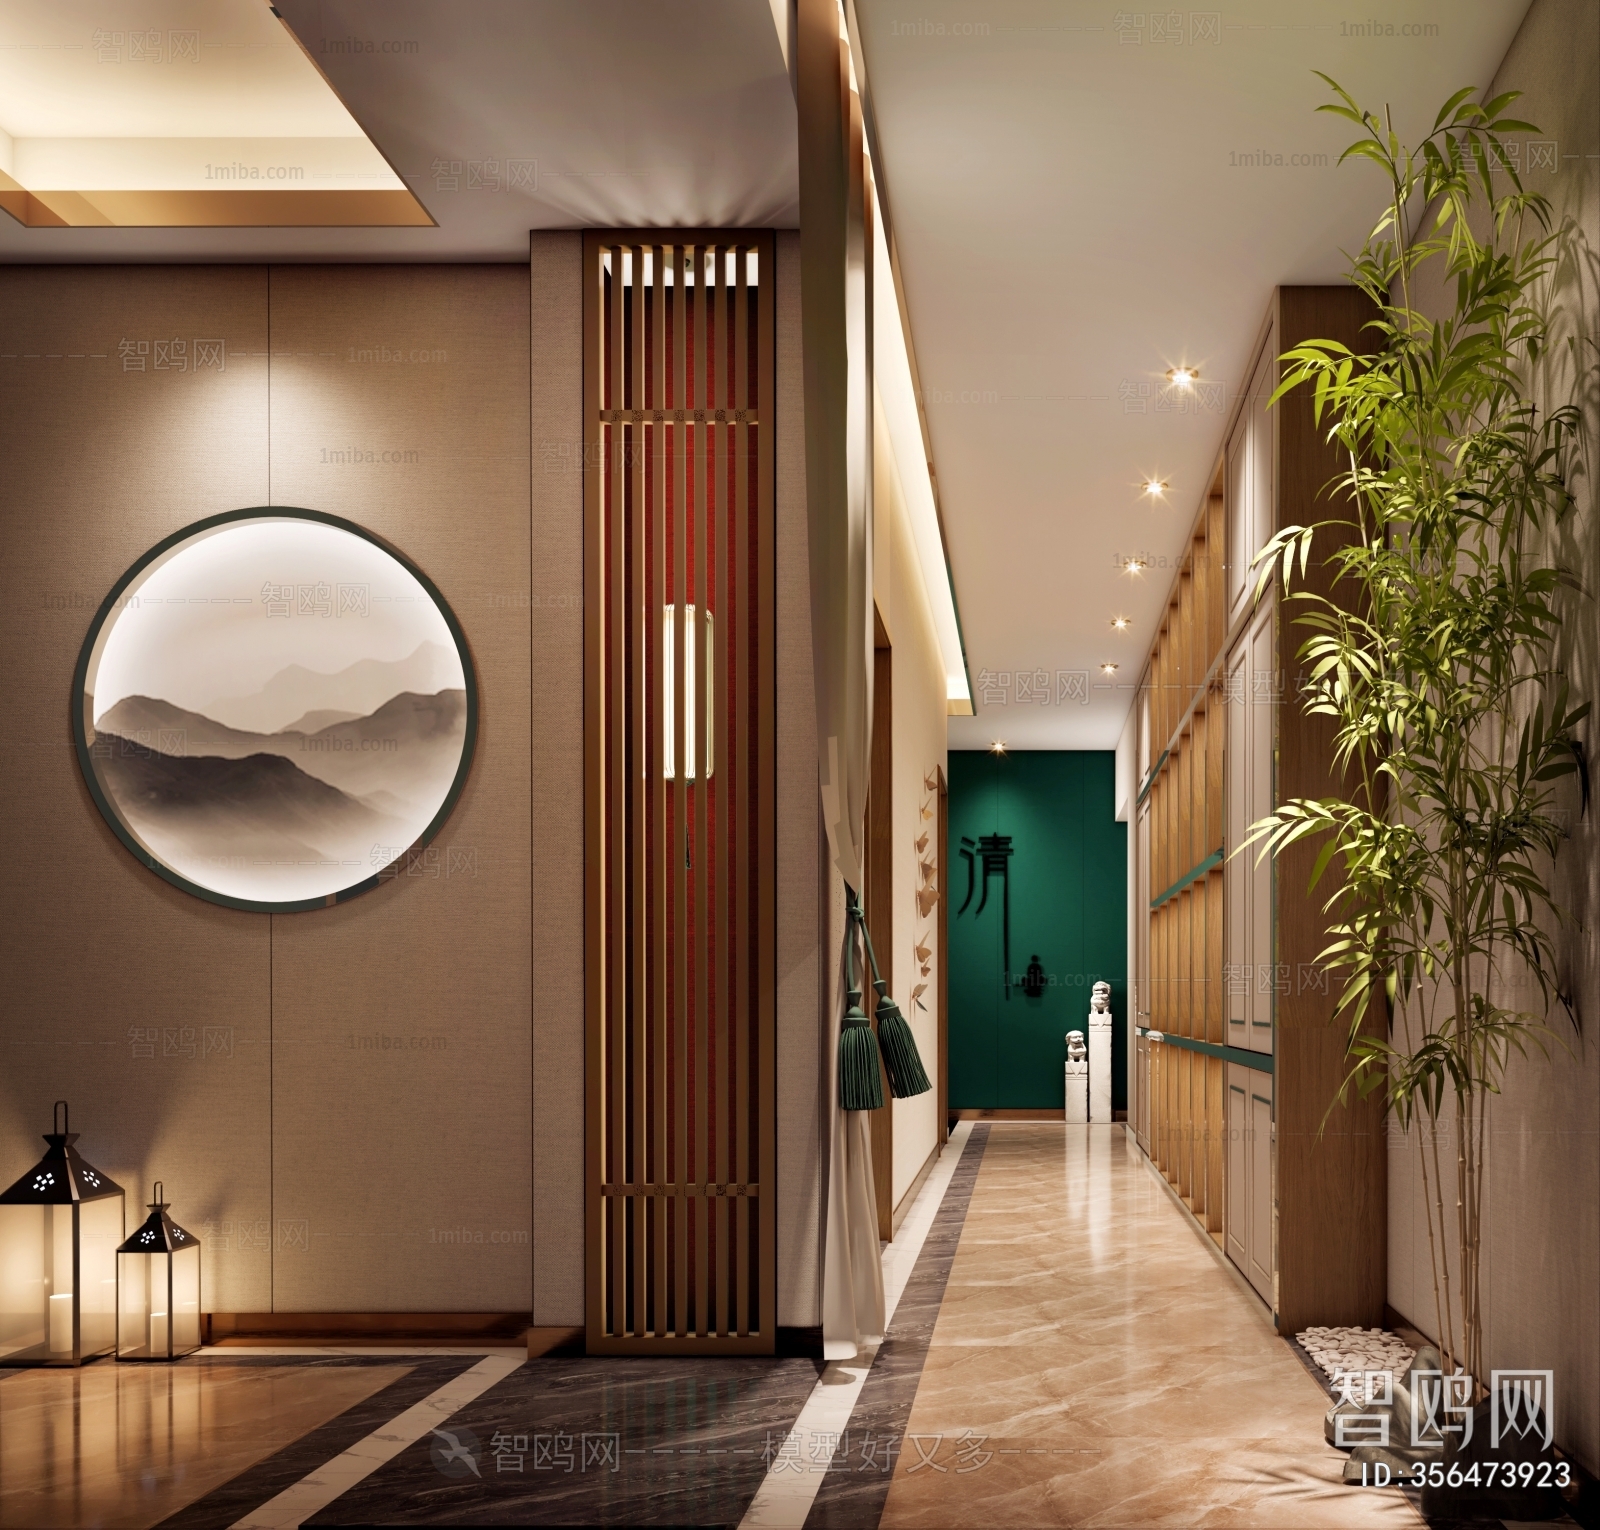 新中式洗浴中心大厅